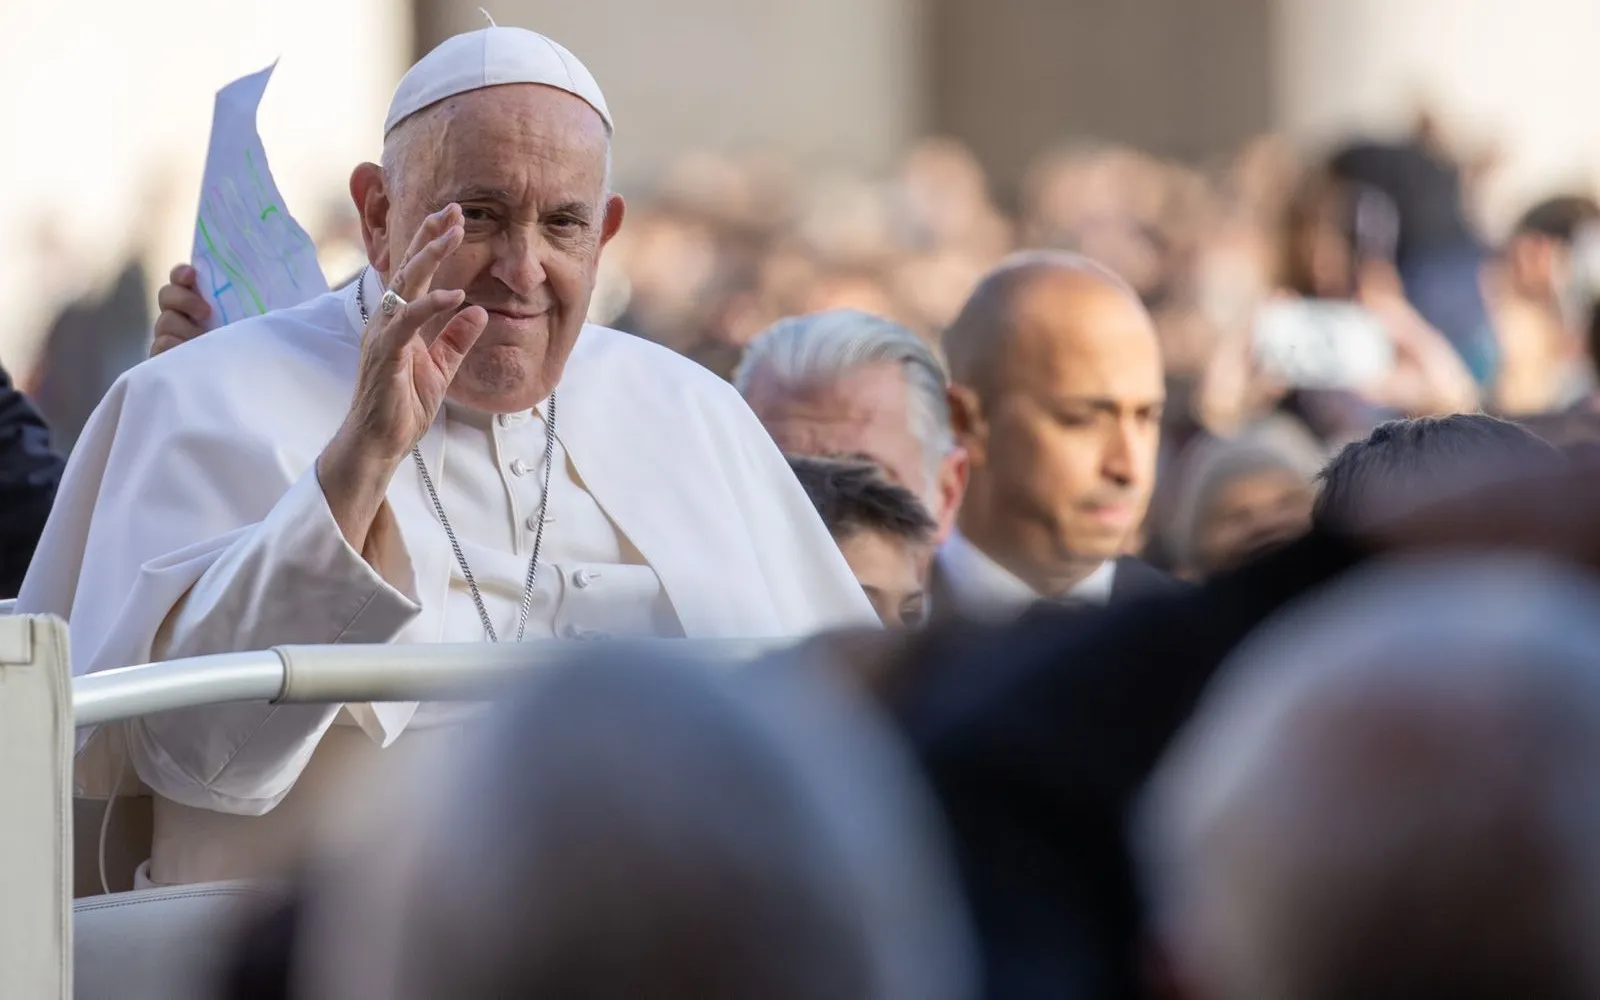 El Papa Francisco saluda a los fieles antes de la Audiencia General de este miércoles 22 de noviembre?w=200&h=150